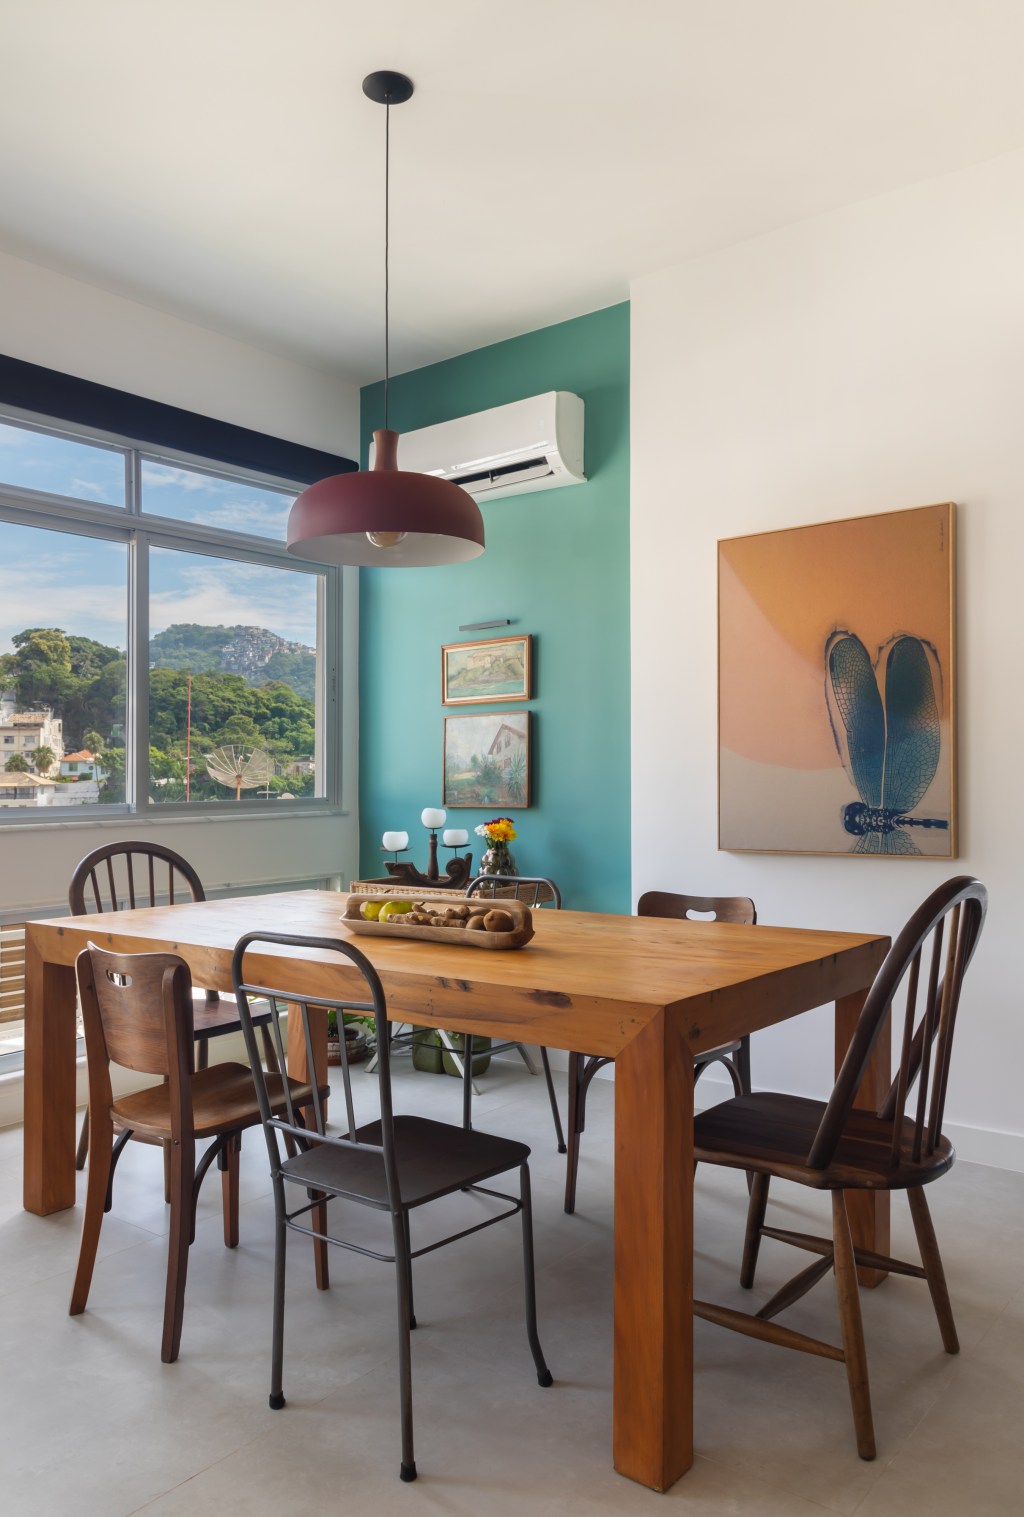 Paredes verdes azuis apartamento despojado 81 m2 Ketlein Amorim decoração sala jantar mesa cadeira luminaria quadro